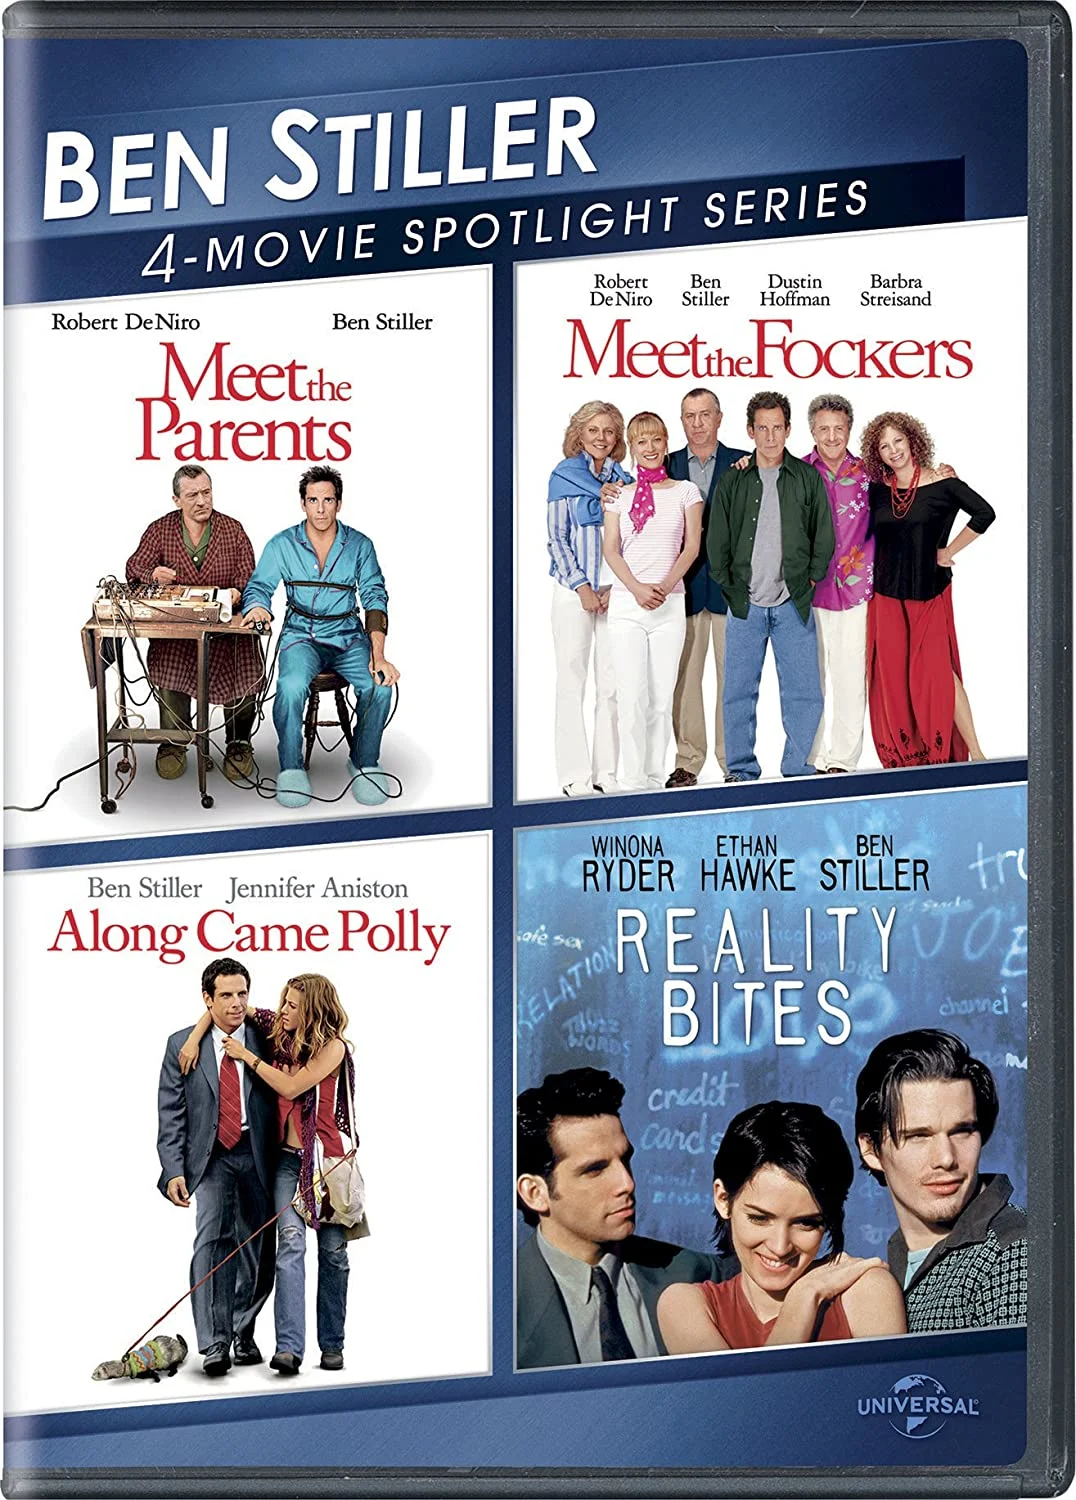 Ben Stiller: 4 Movie Spotlight Series (DVD) on MovieShack